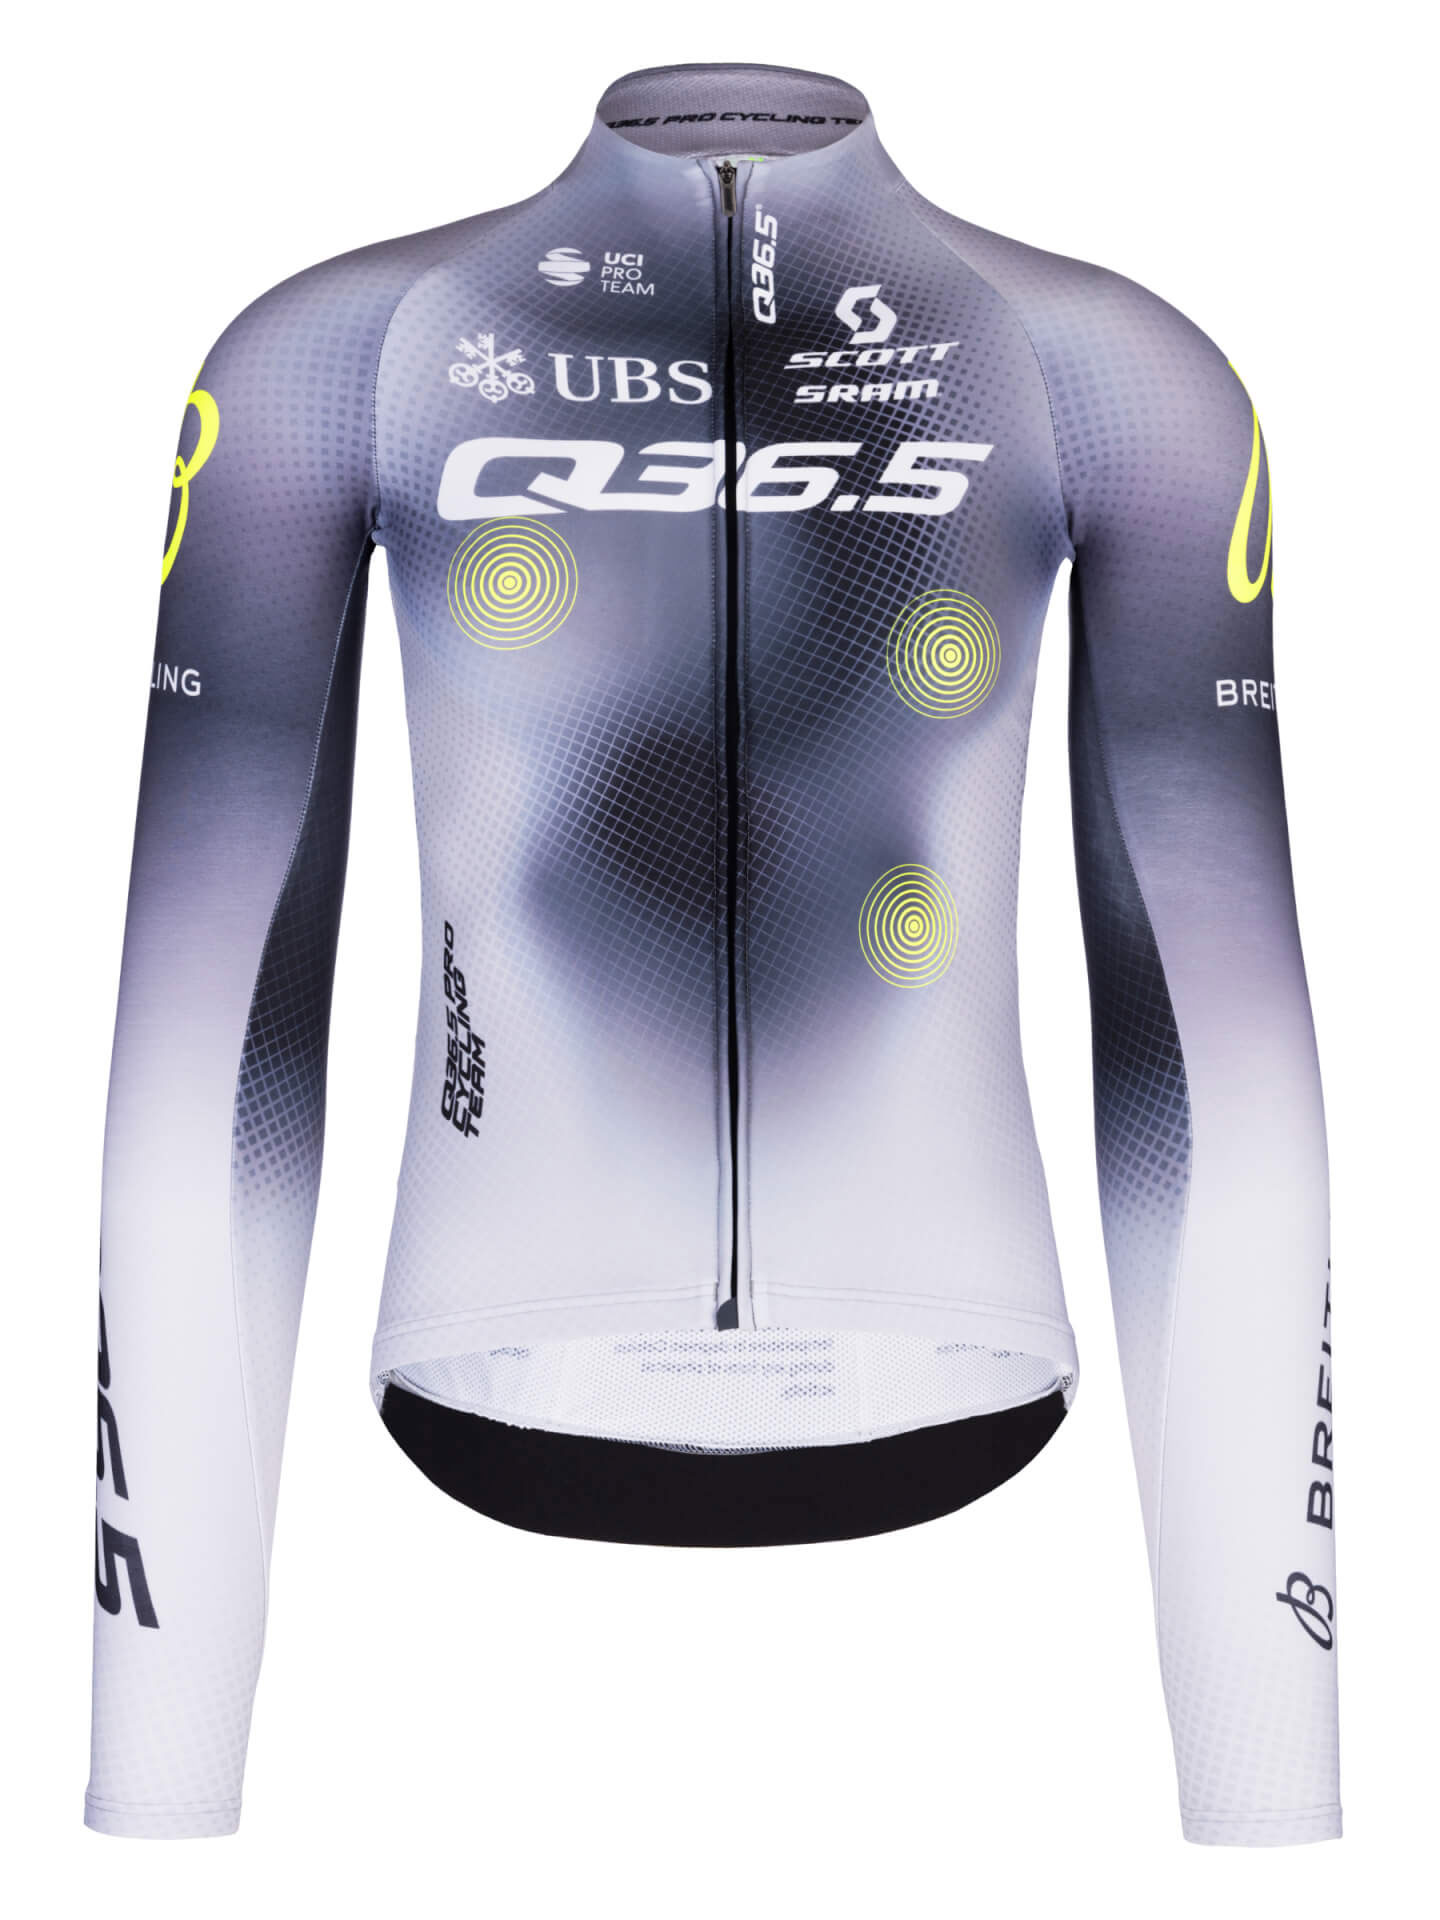 Q36.5 Pro Cycling Team Bib Shorts • Q36.5